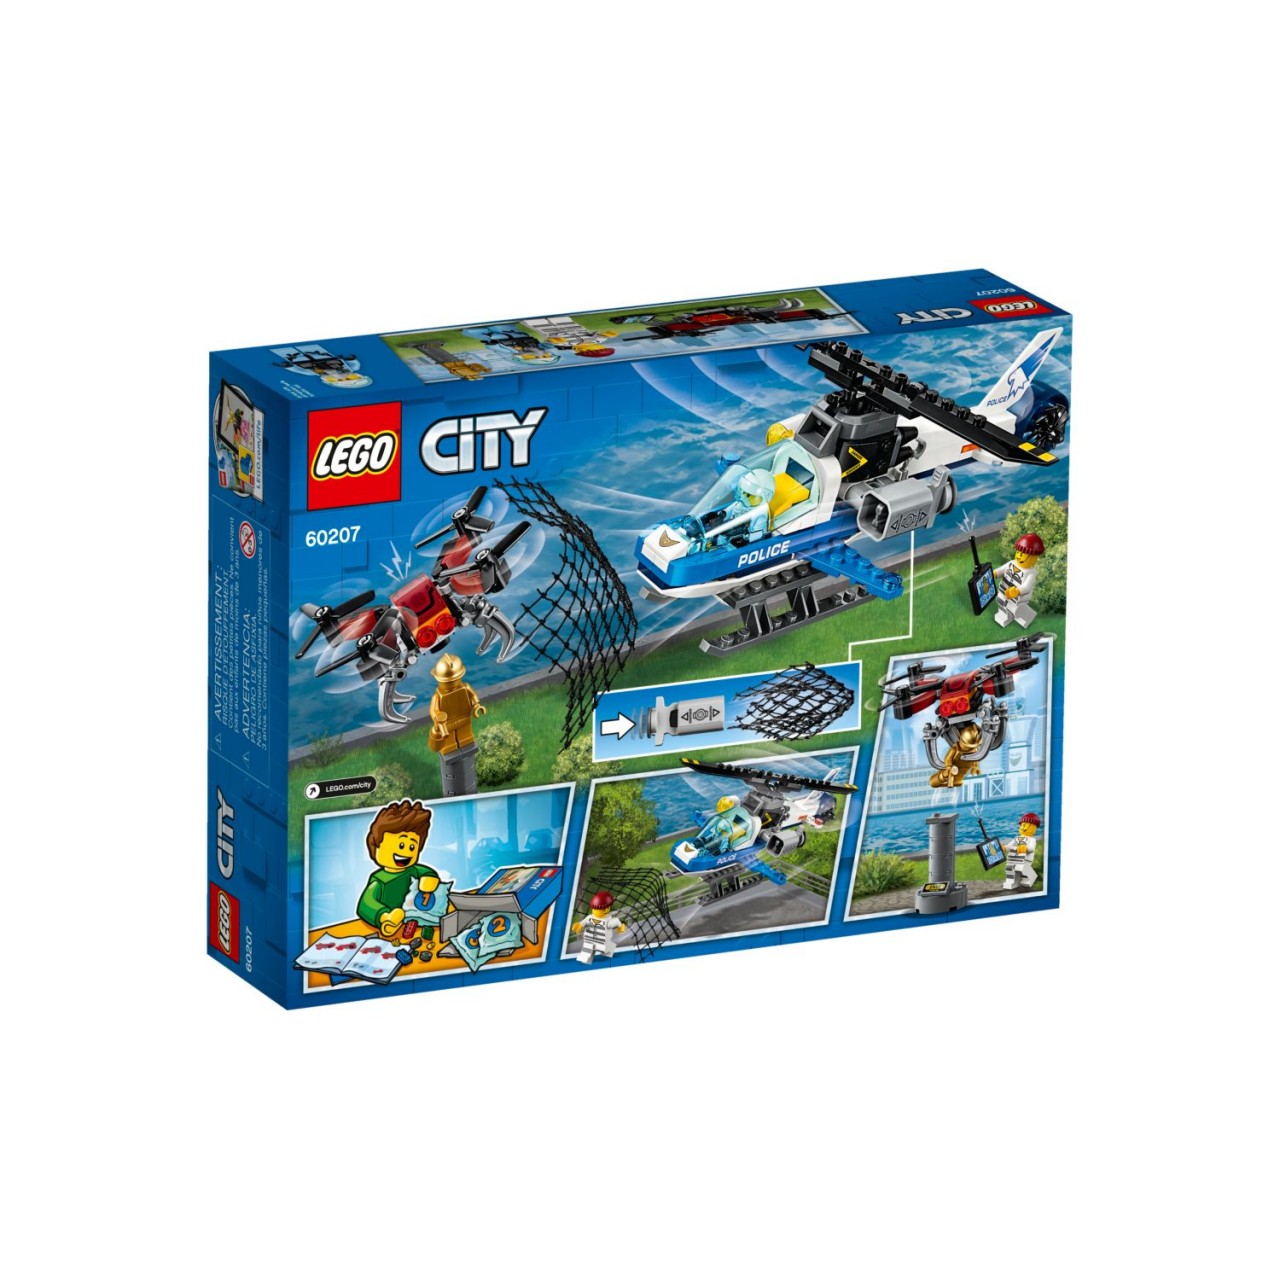 LEGO CITY 60207 Polizei Drohnenjagd